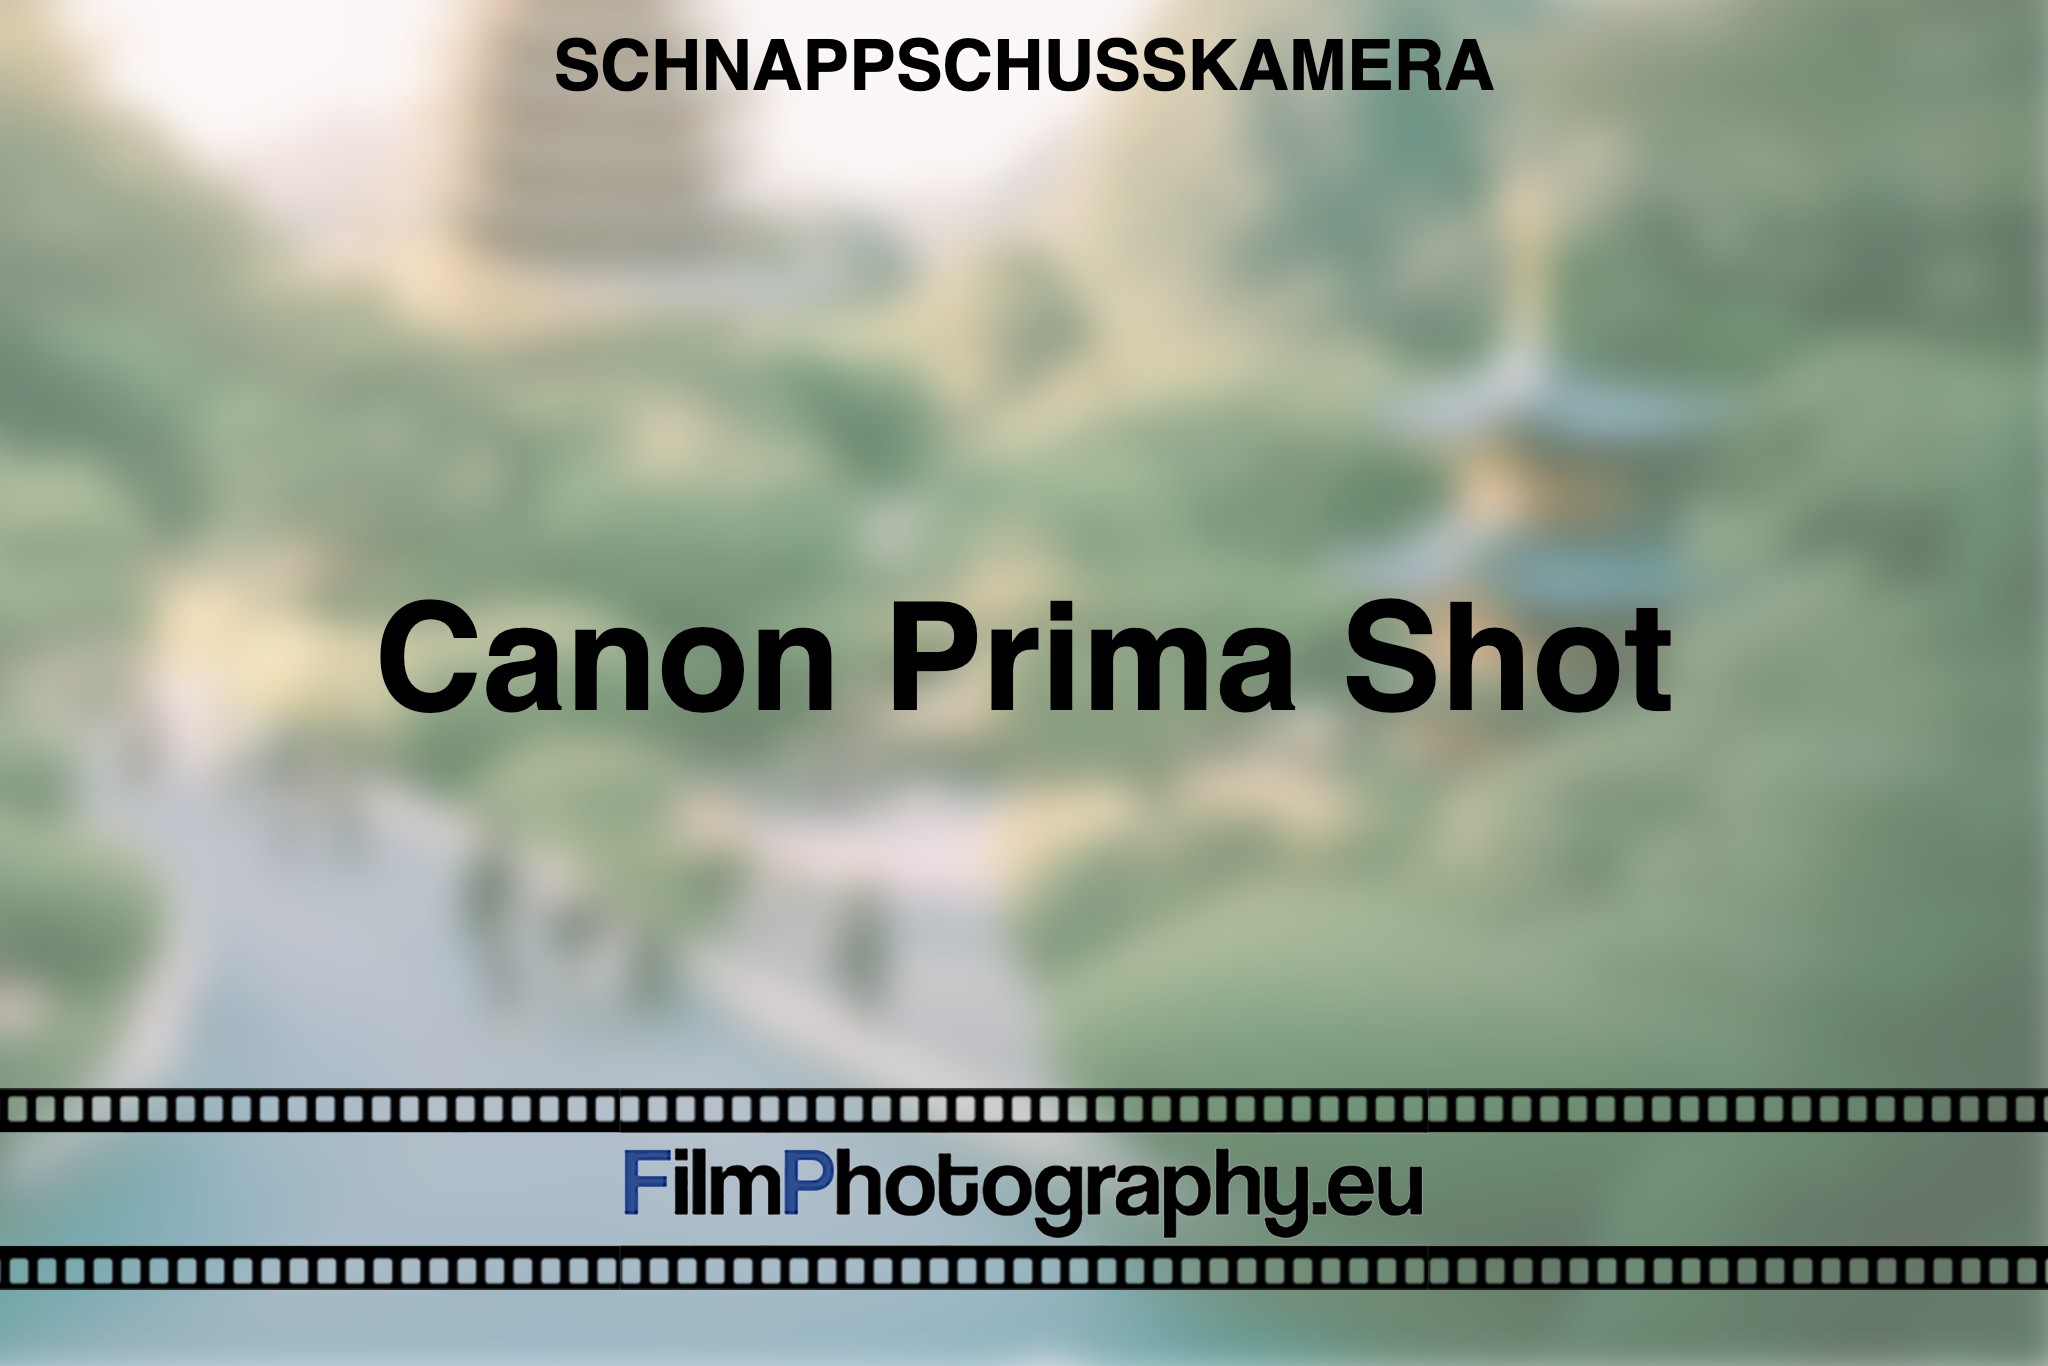 canon-prima-shot-schnappschusskamera-bnv